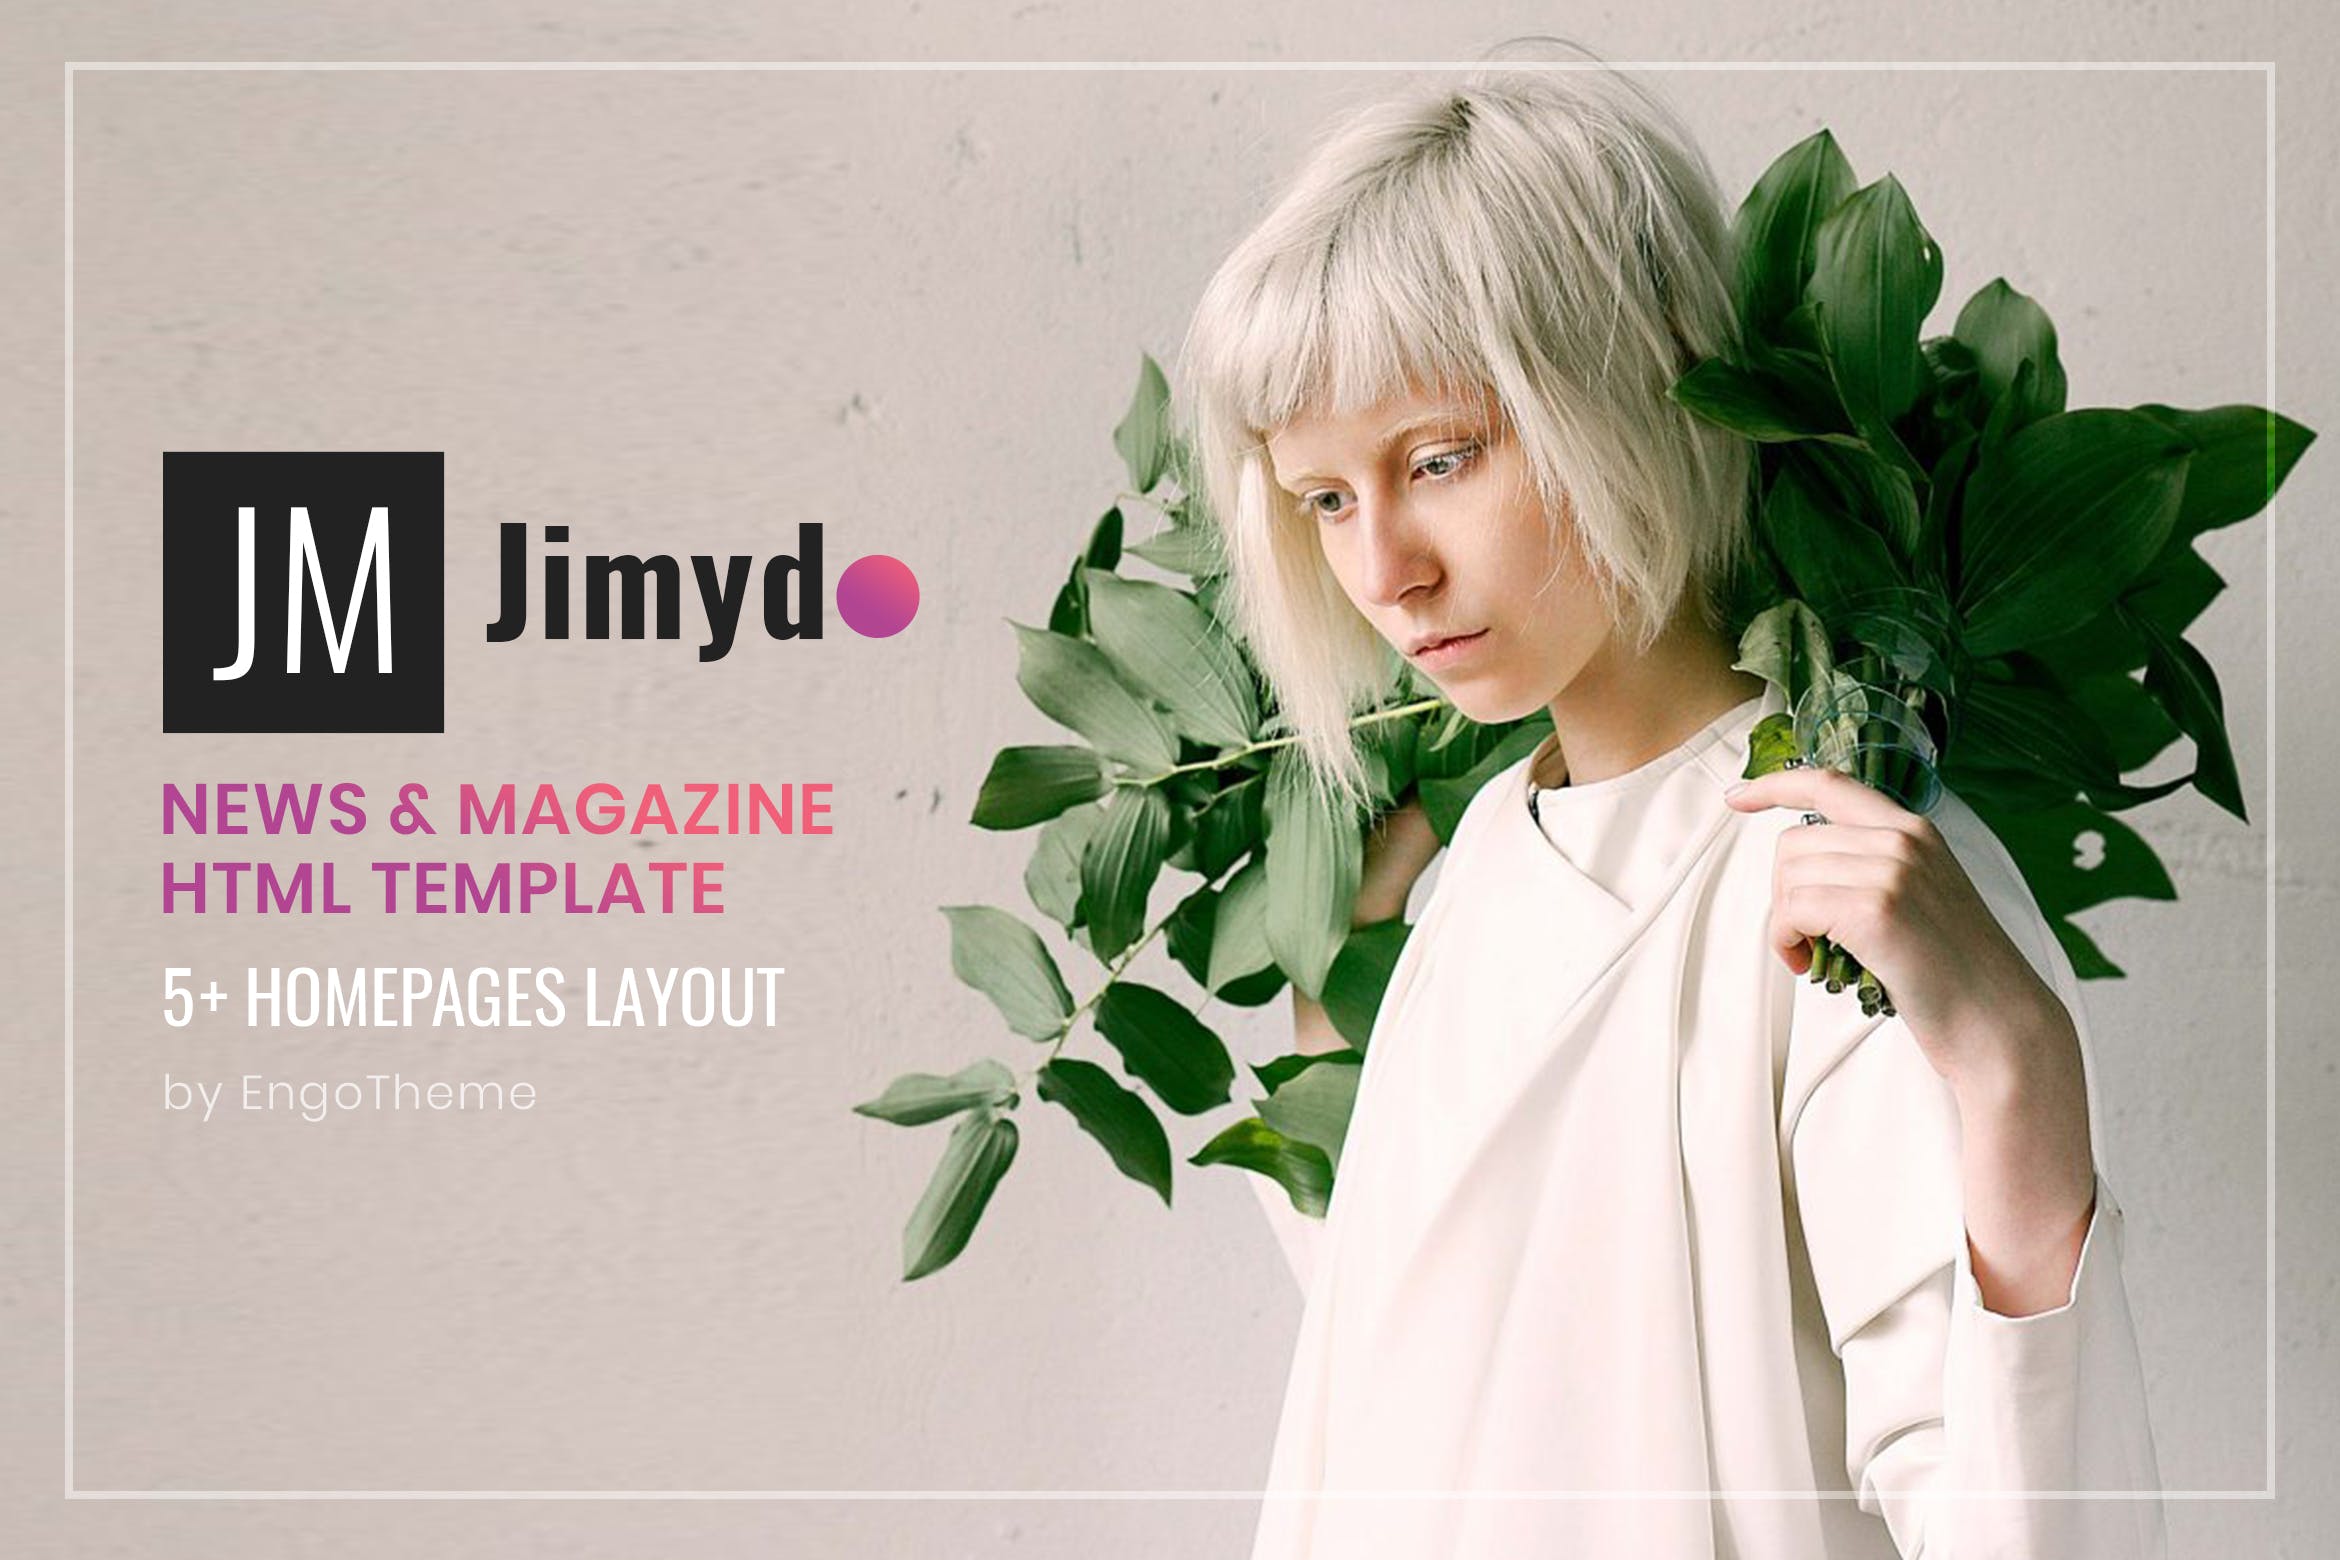 新闻资讯&杂志主题网站建设HTML模板素材中国精选下载 JIMYDO | News & Magazine HTML Template插图